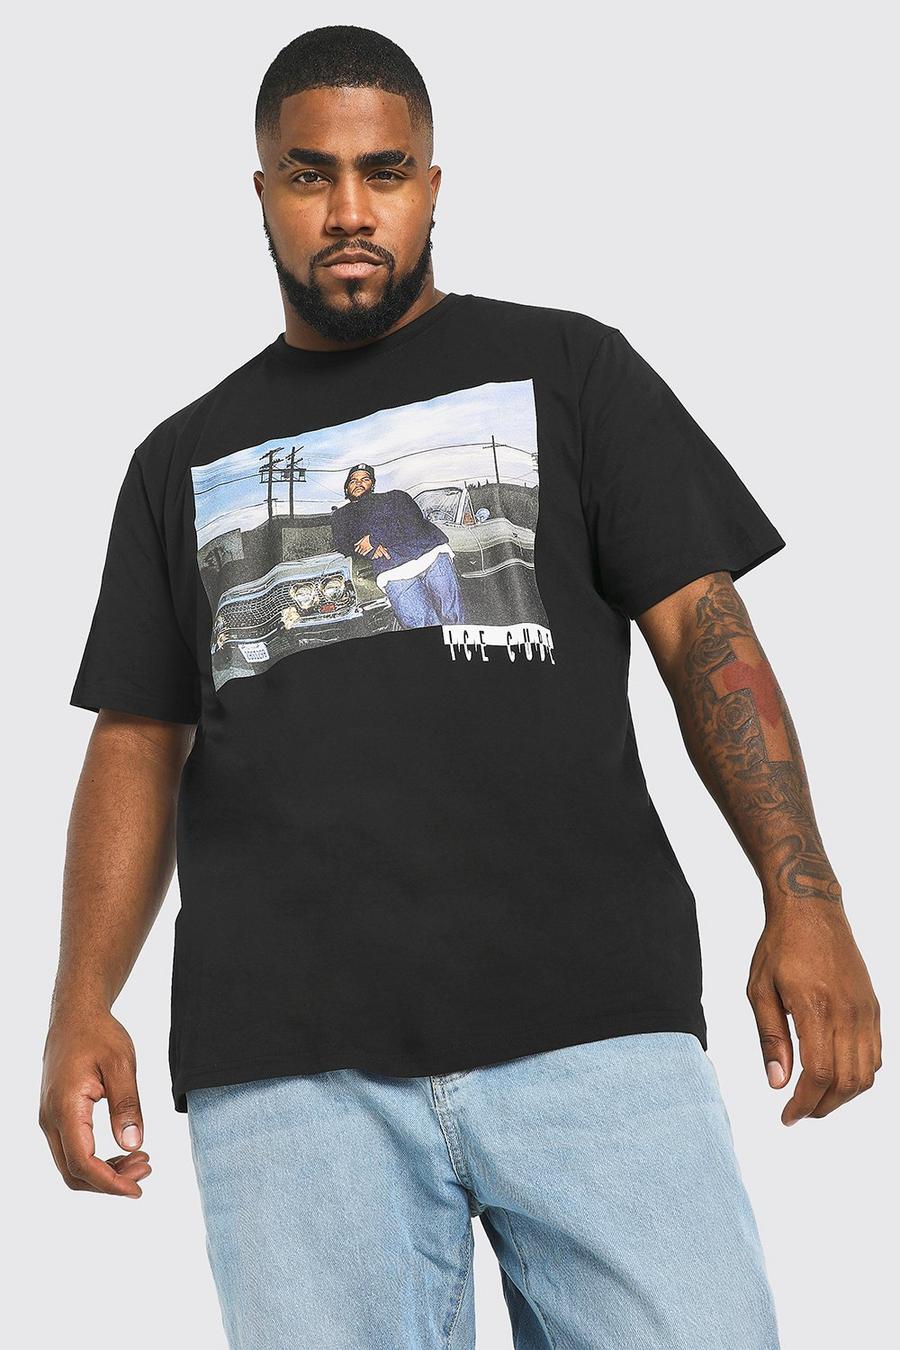 שחור black טישרט Ice Cube ממותג לגברים גדולים וגבוהים